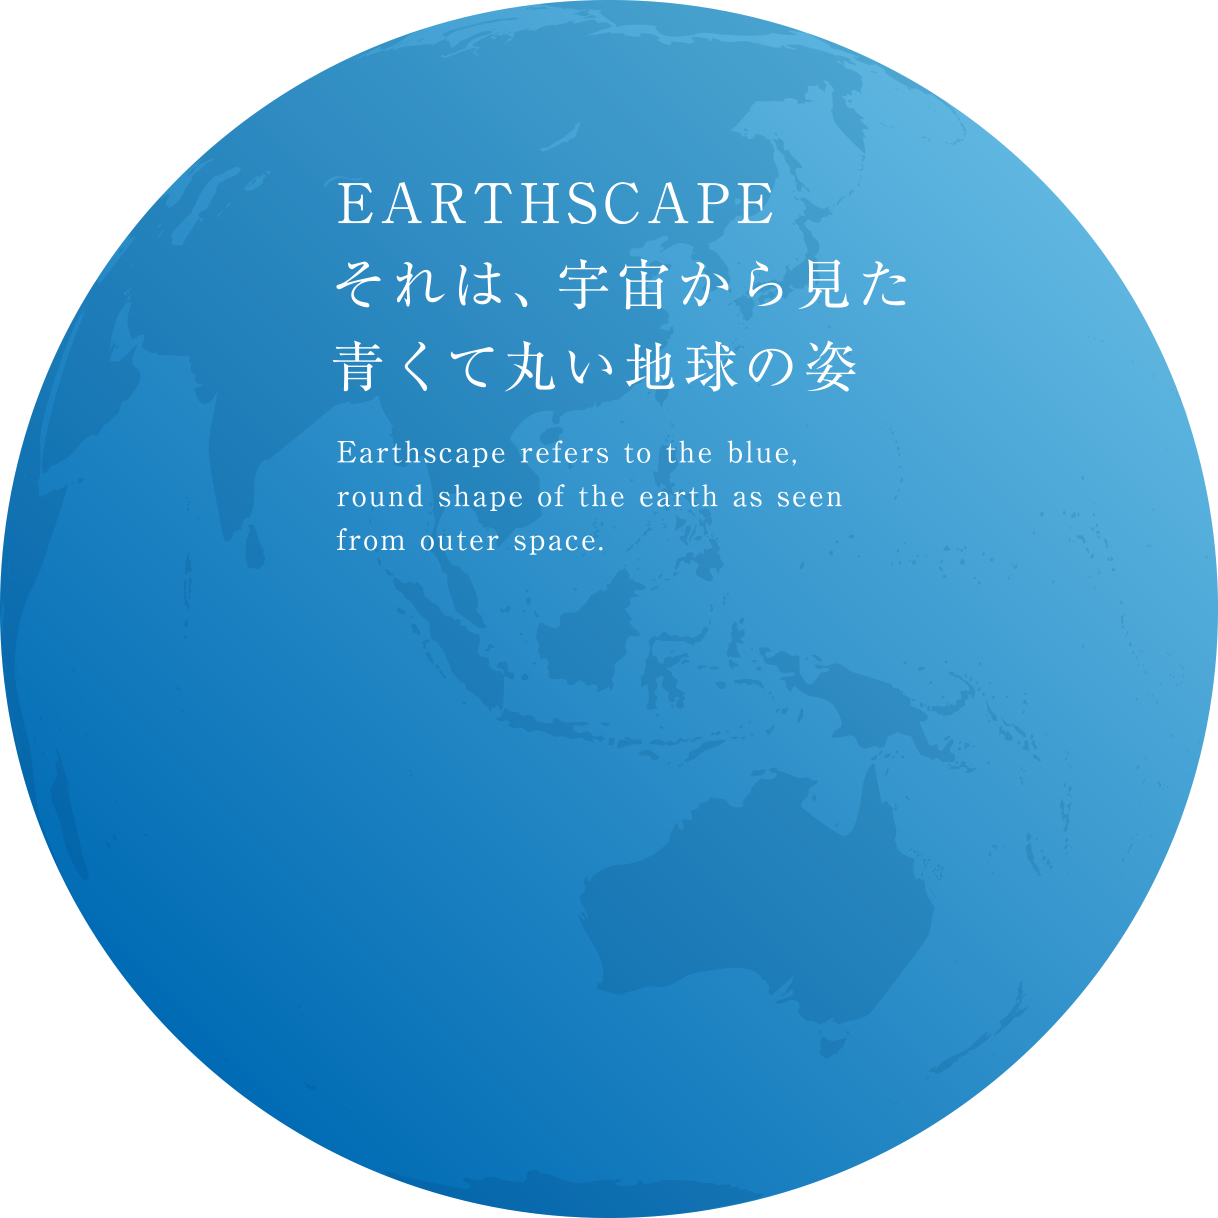 EARTHSCAPE、それは宇宙から見た青くて丸い地球の姿。